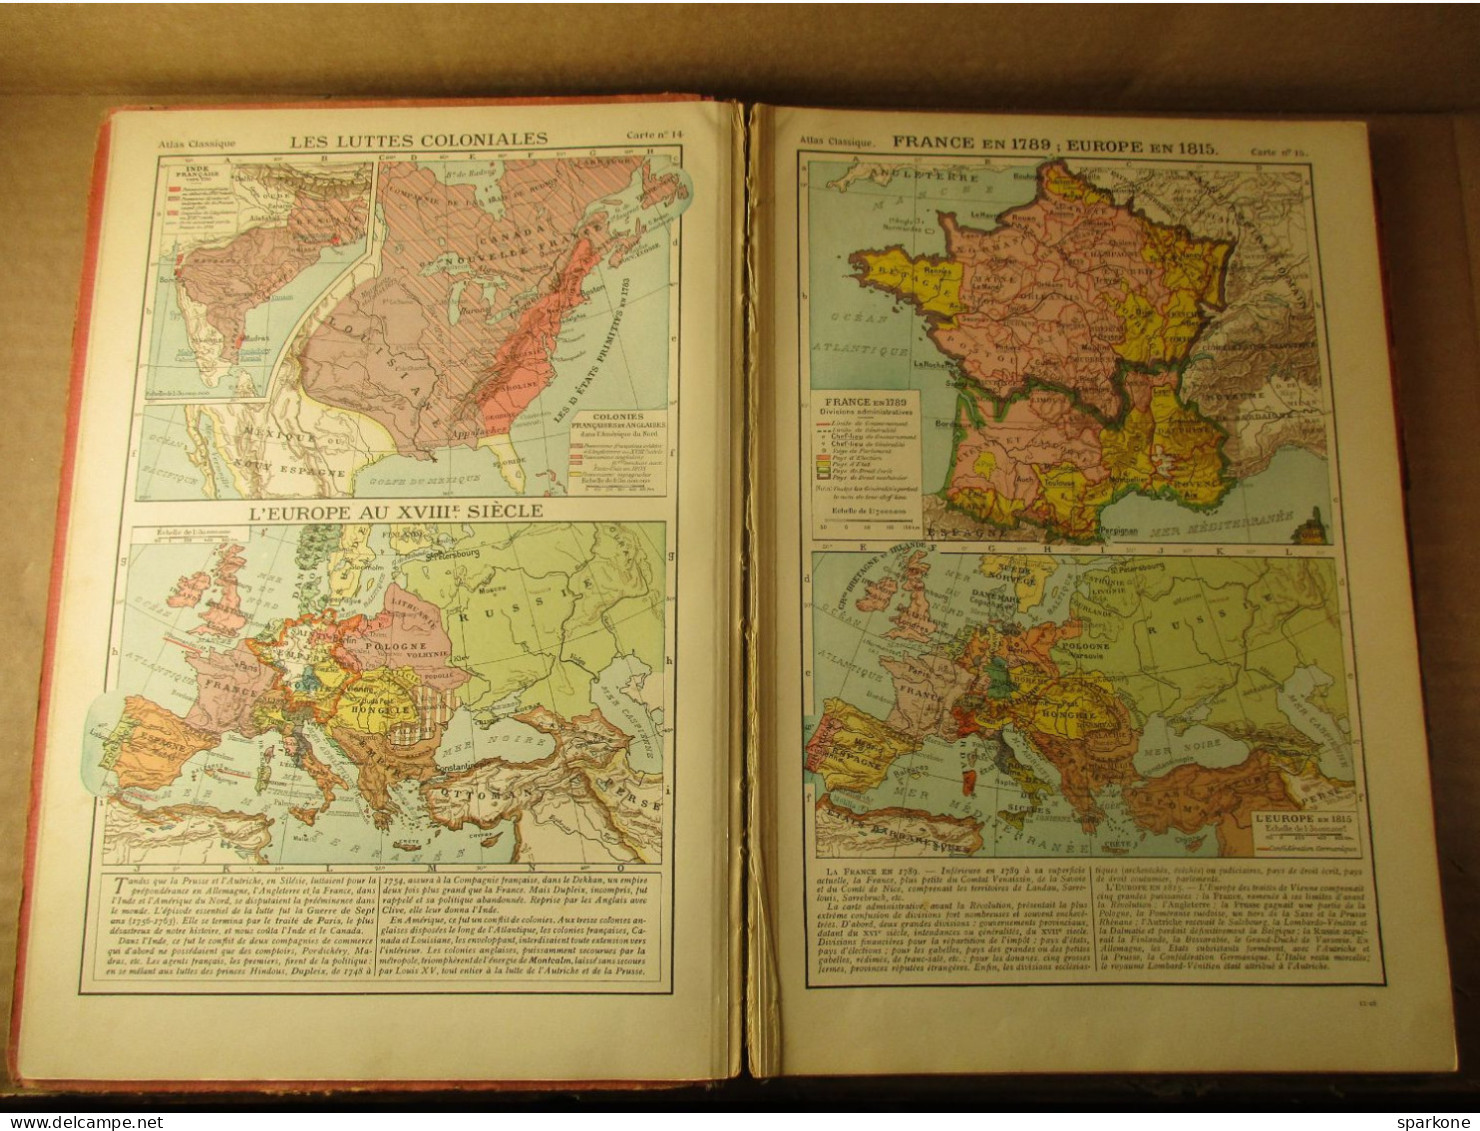 Atlas Classique De Géographie Ancienne Et Moderne (F. Schrader Et L. Gallouédec) éditions Hachette De 1928 - Mappe/Atlanti